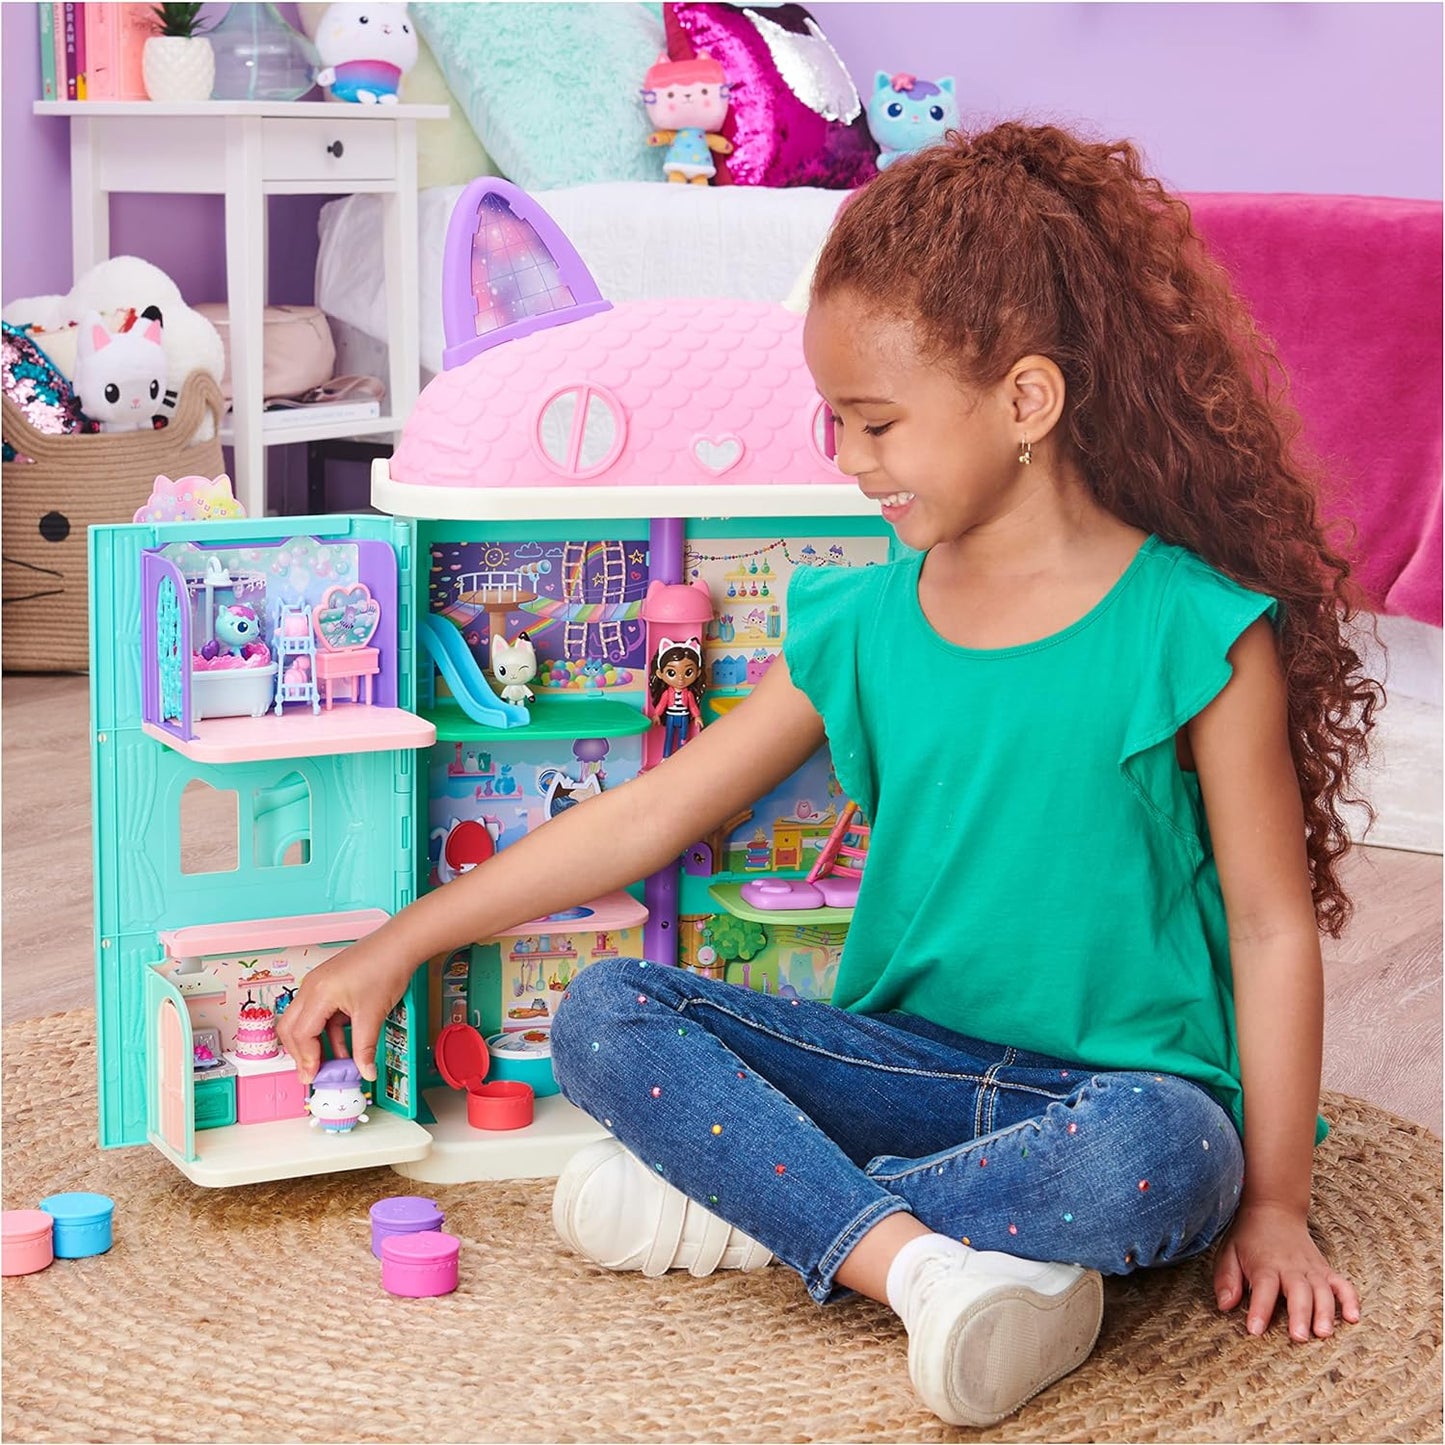 Gabby’s Dollhouse Bakey com Cakey Kitchen com figura e 3 acessórios, 3 móveis e 2 entregas, brinquedos infantis para maiores de 3 anos